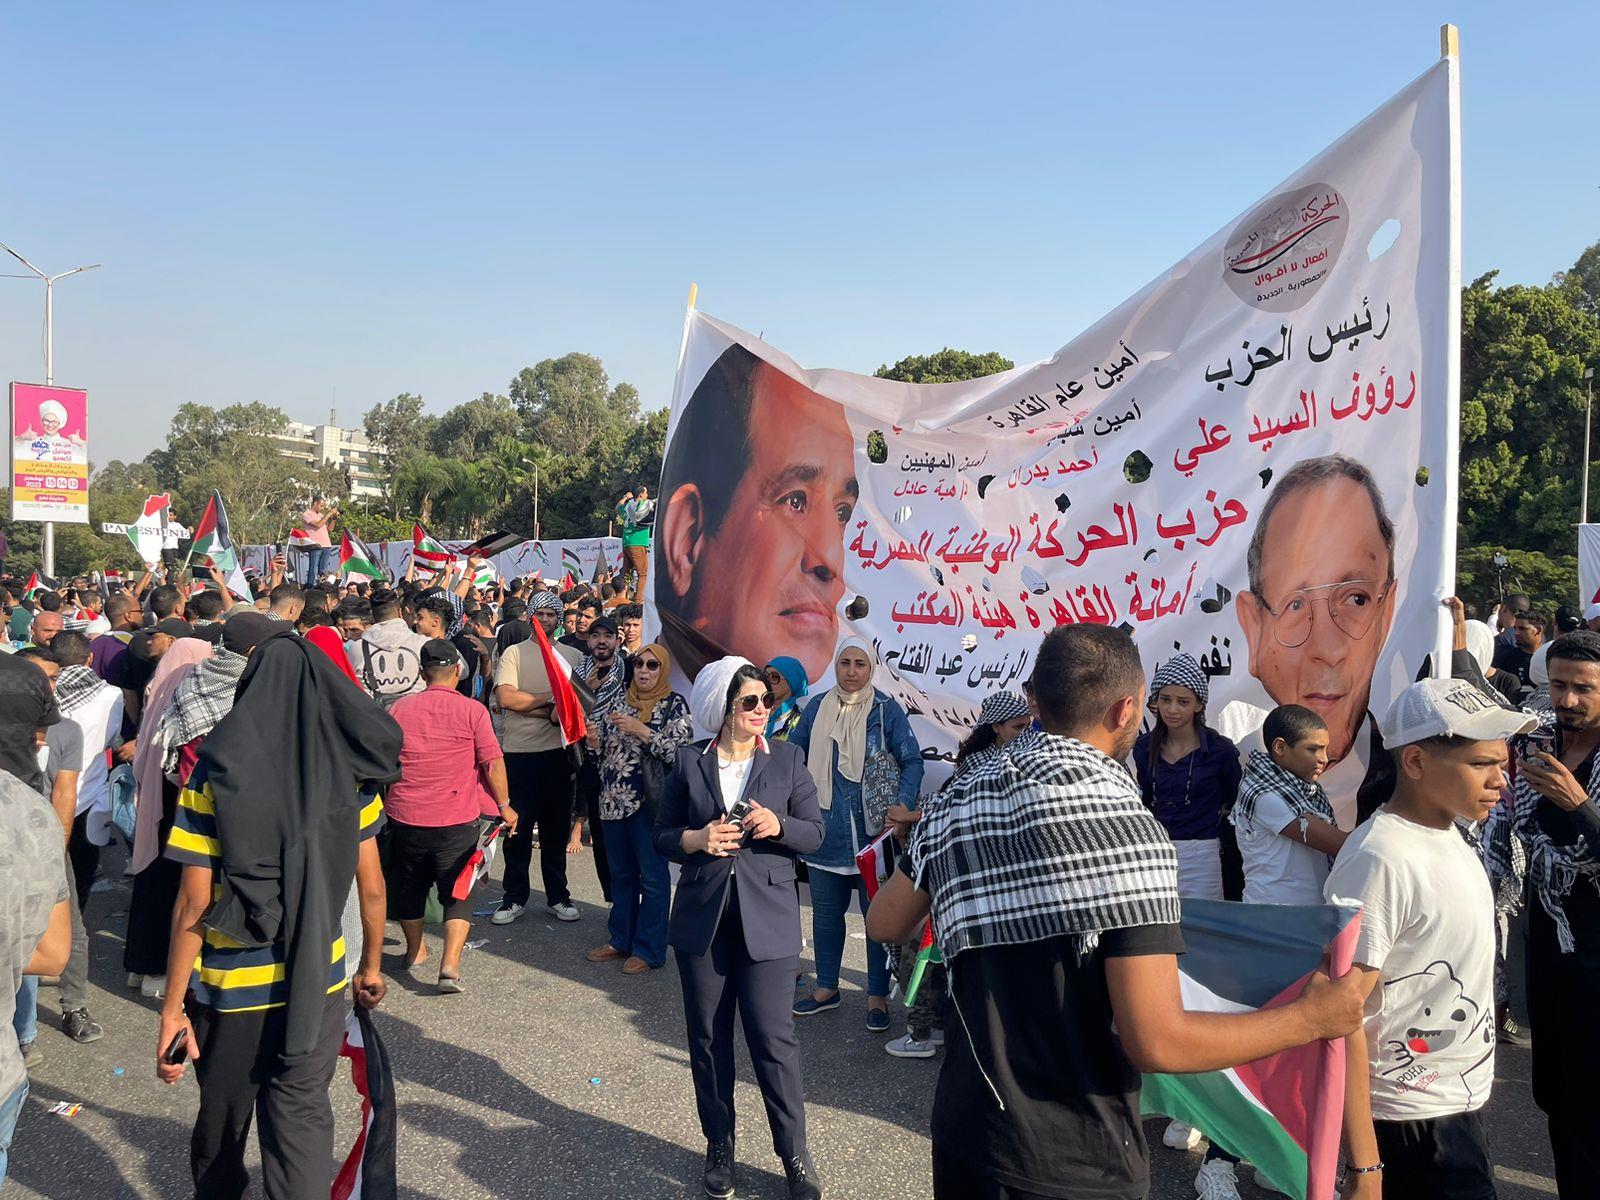 الحركة الوطنية بالقاهرة يشارك في مظاهرات دعم فلسطين ويعلن تفويض السيسي 